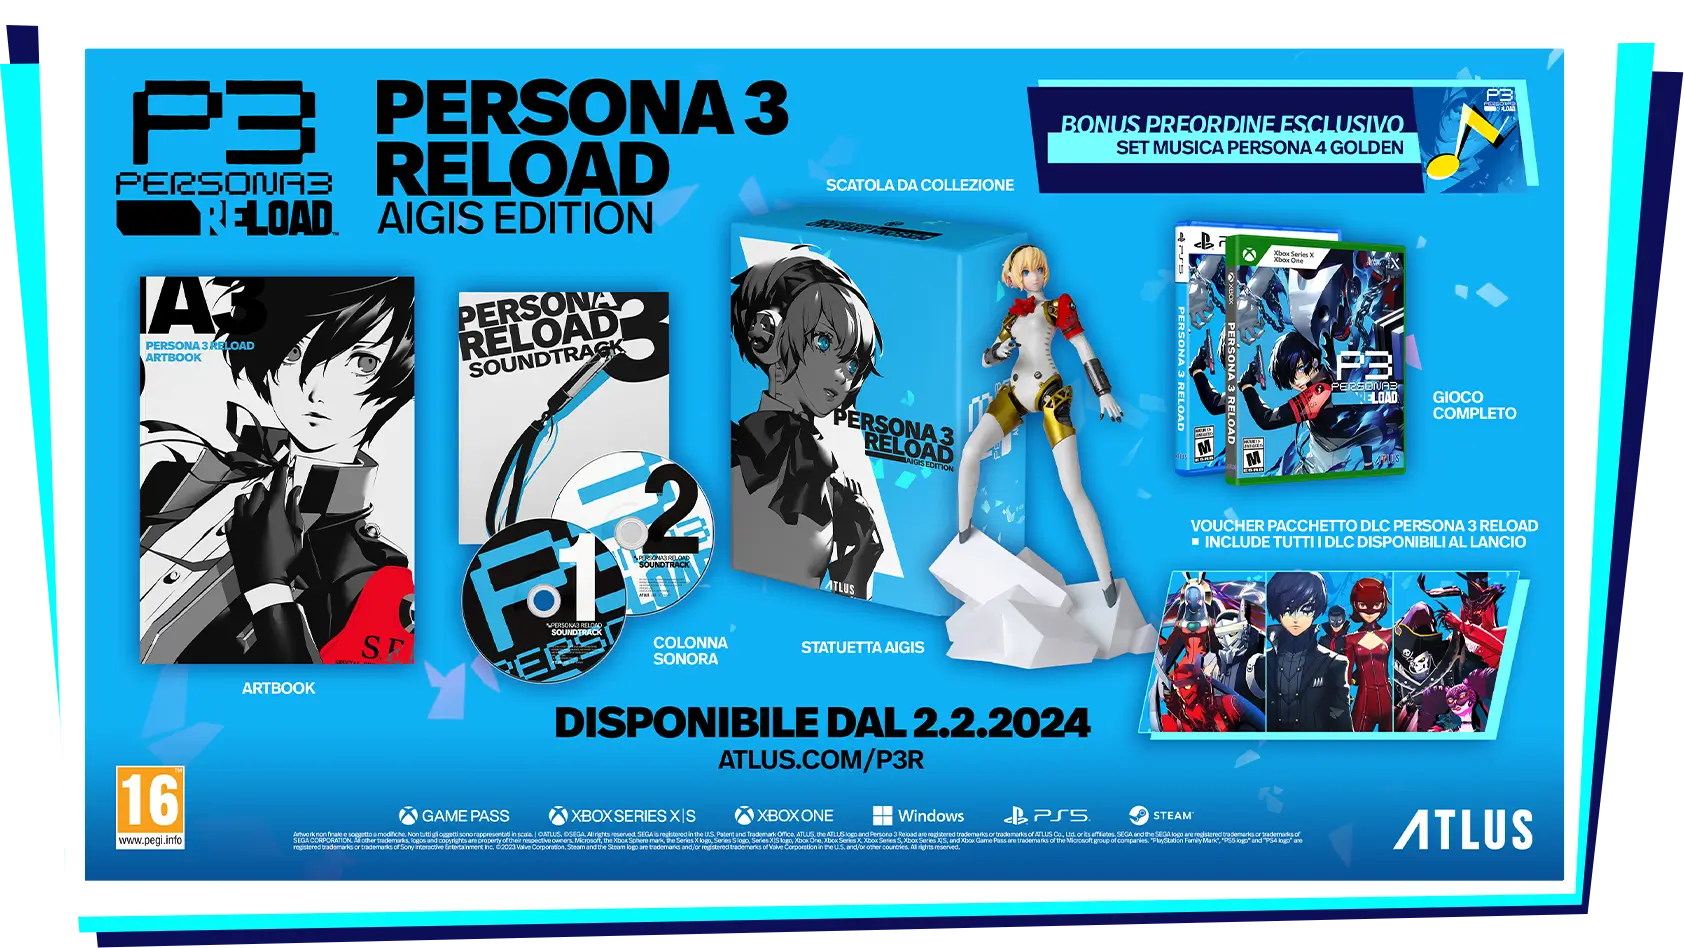 Persona 3 Reload la Aigis Edition è disponibile per la prenotazione.